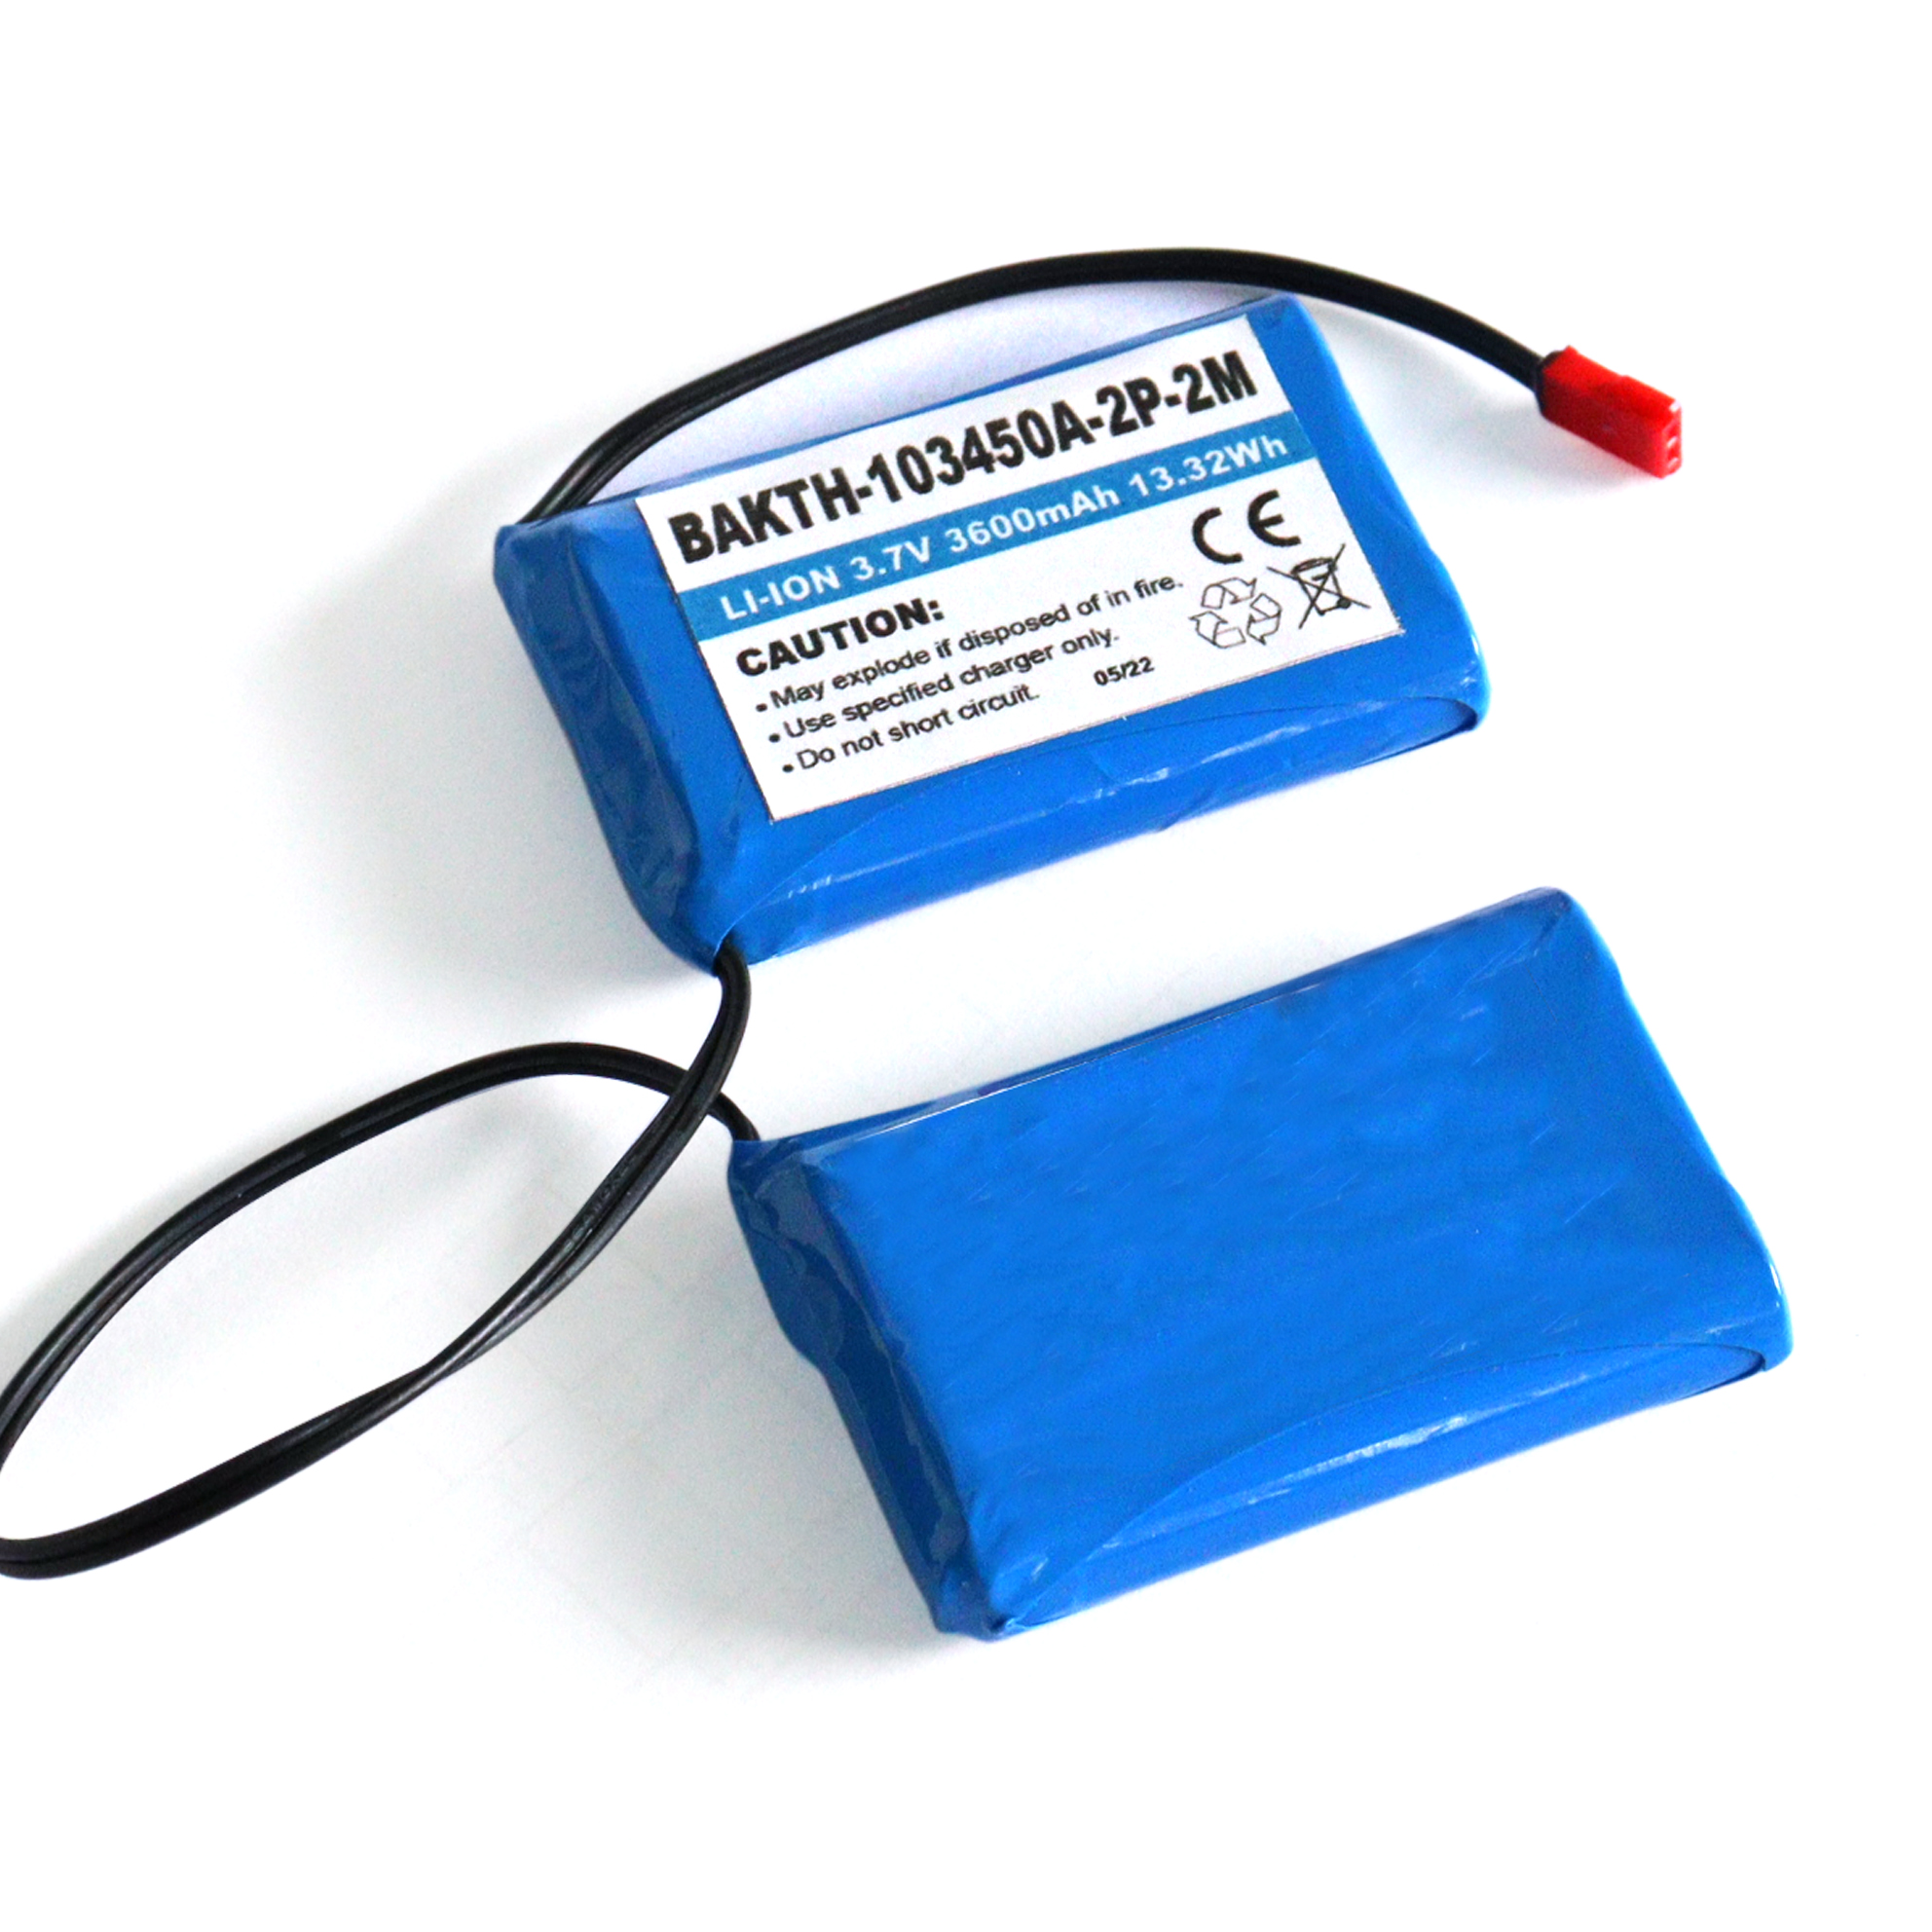 Venta caliente Batería de iones Li recargable 103450 2p 3.7V 3600mAh para electrodomésticos